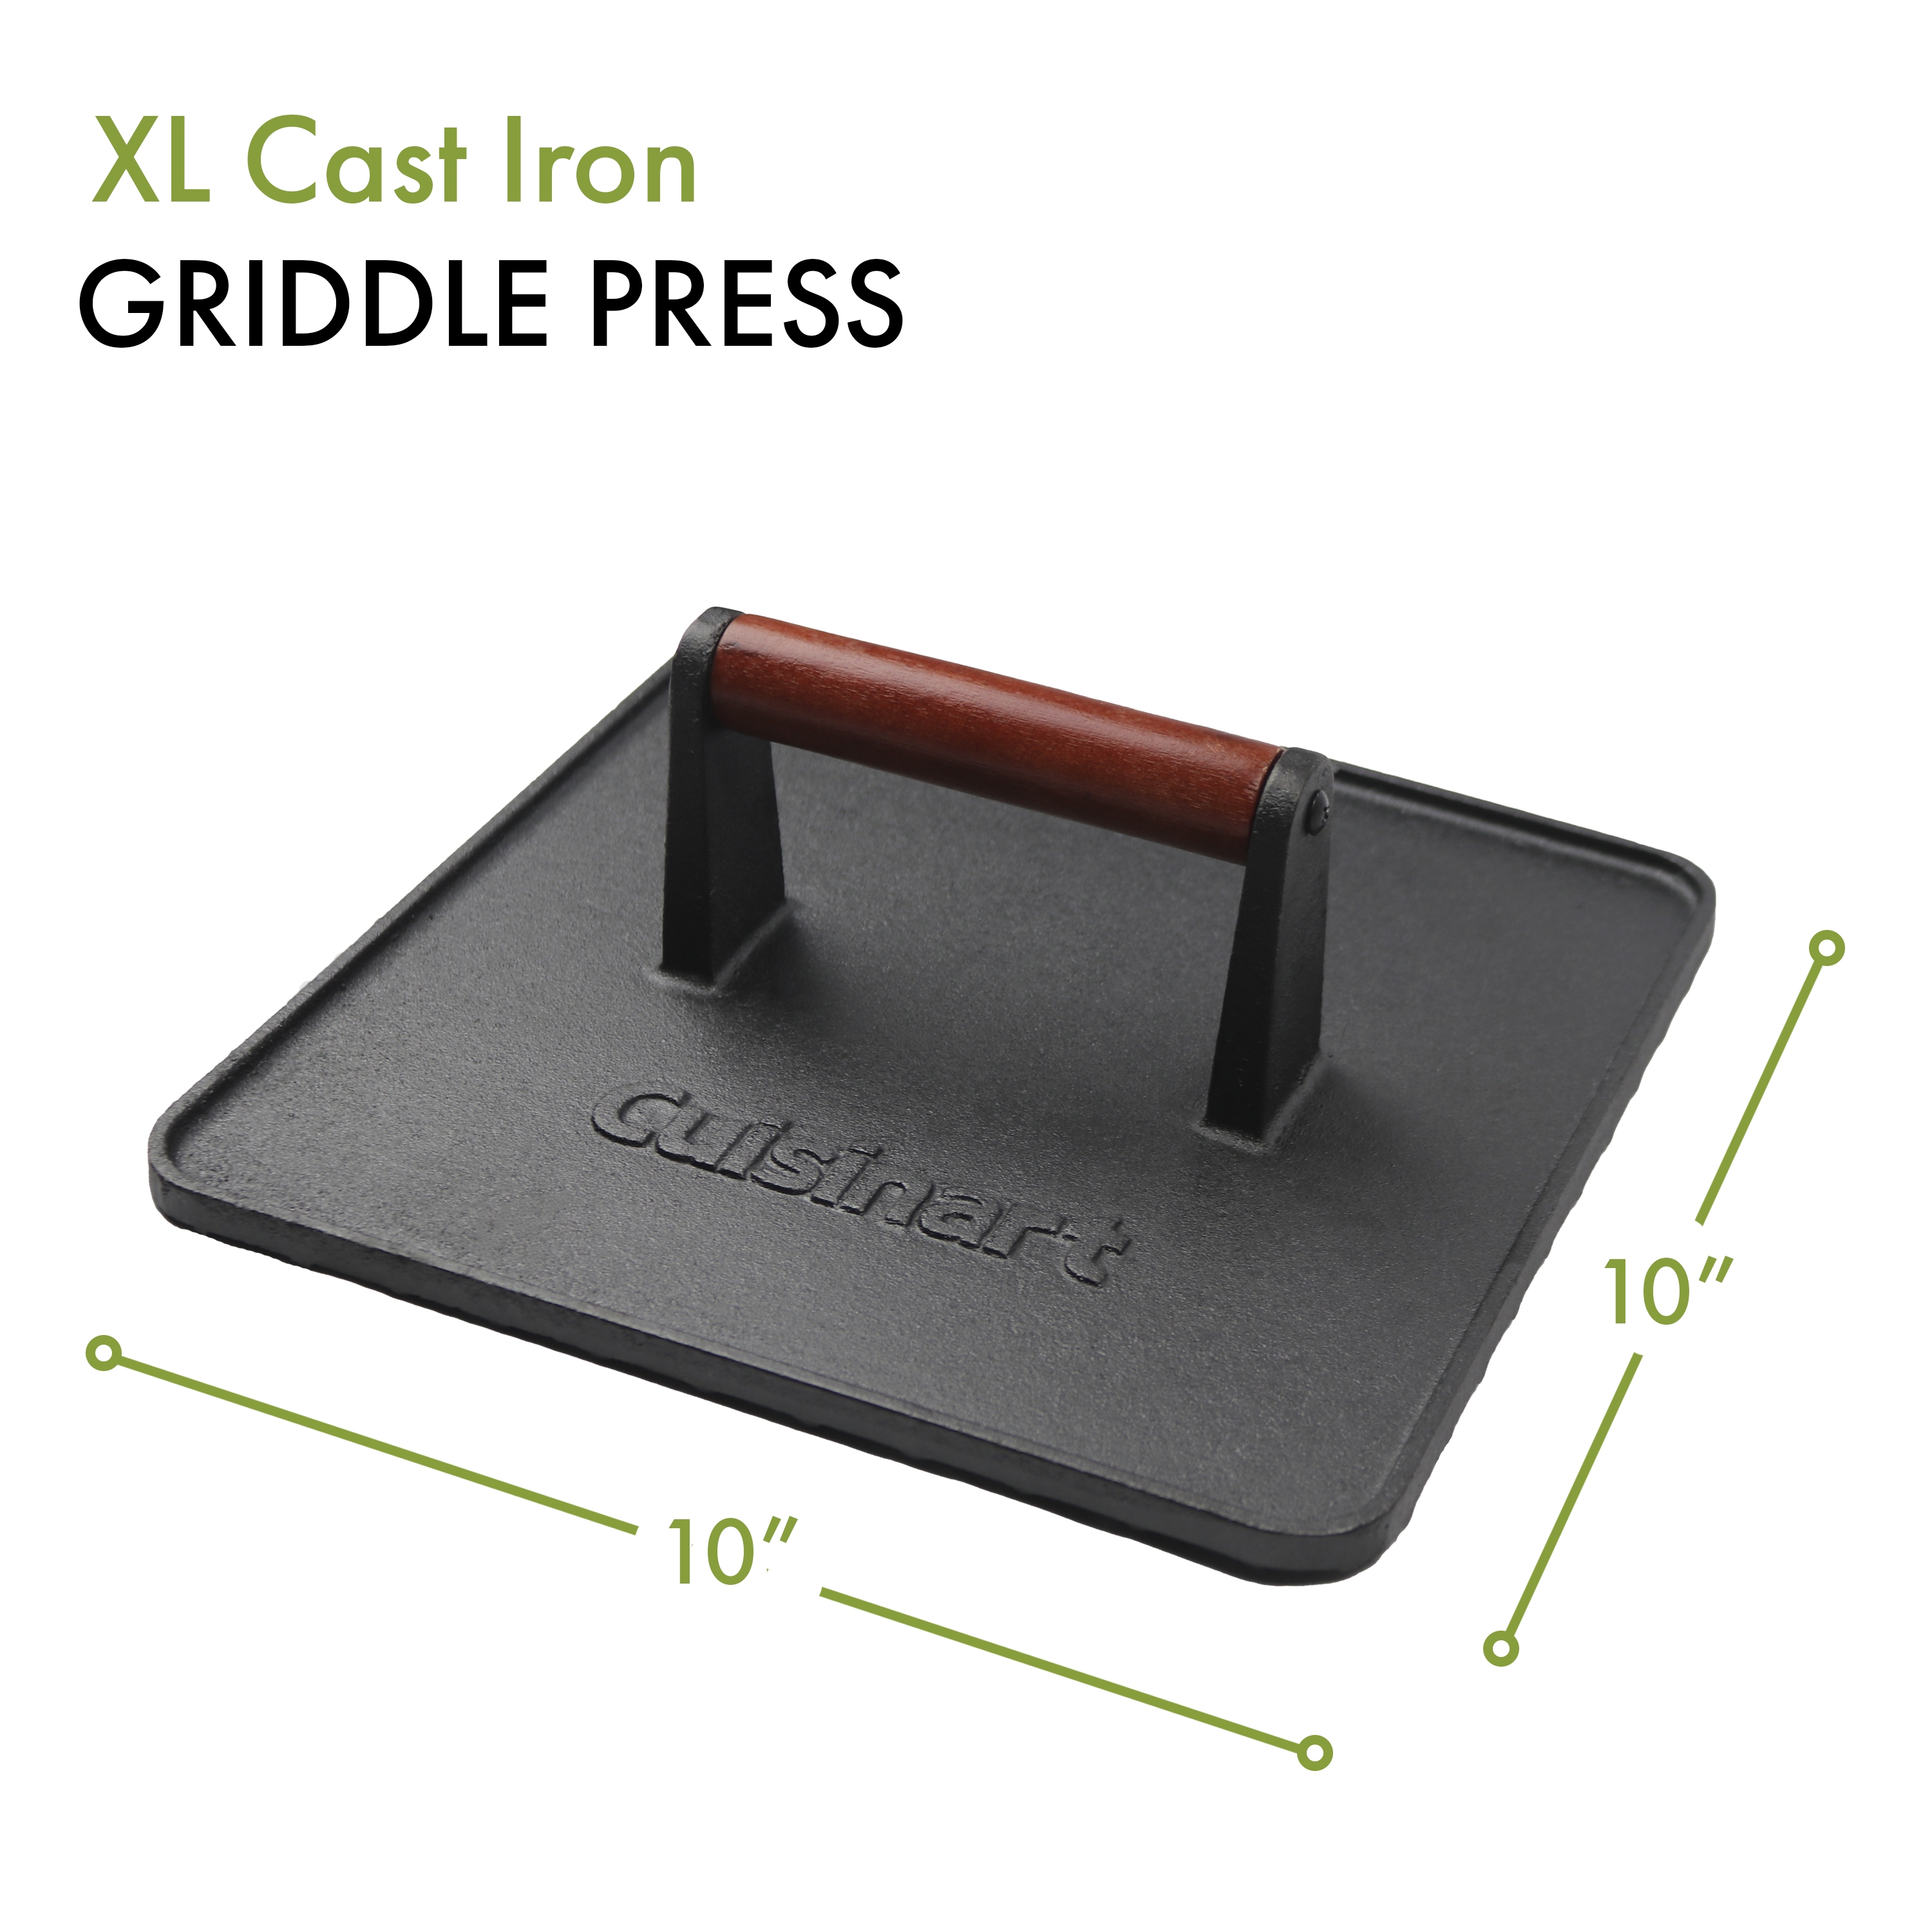 XL Cast Iron Griddle Press